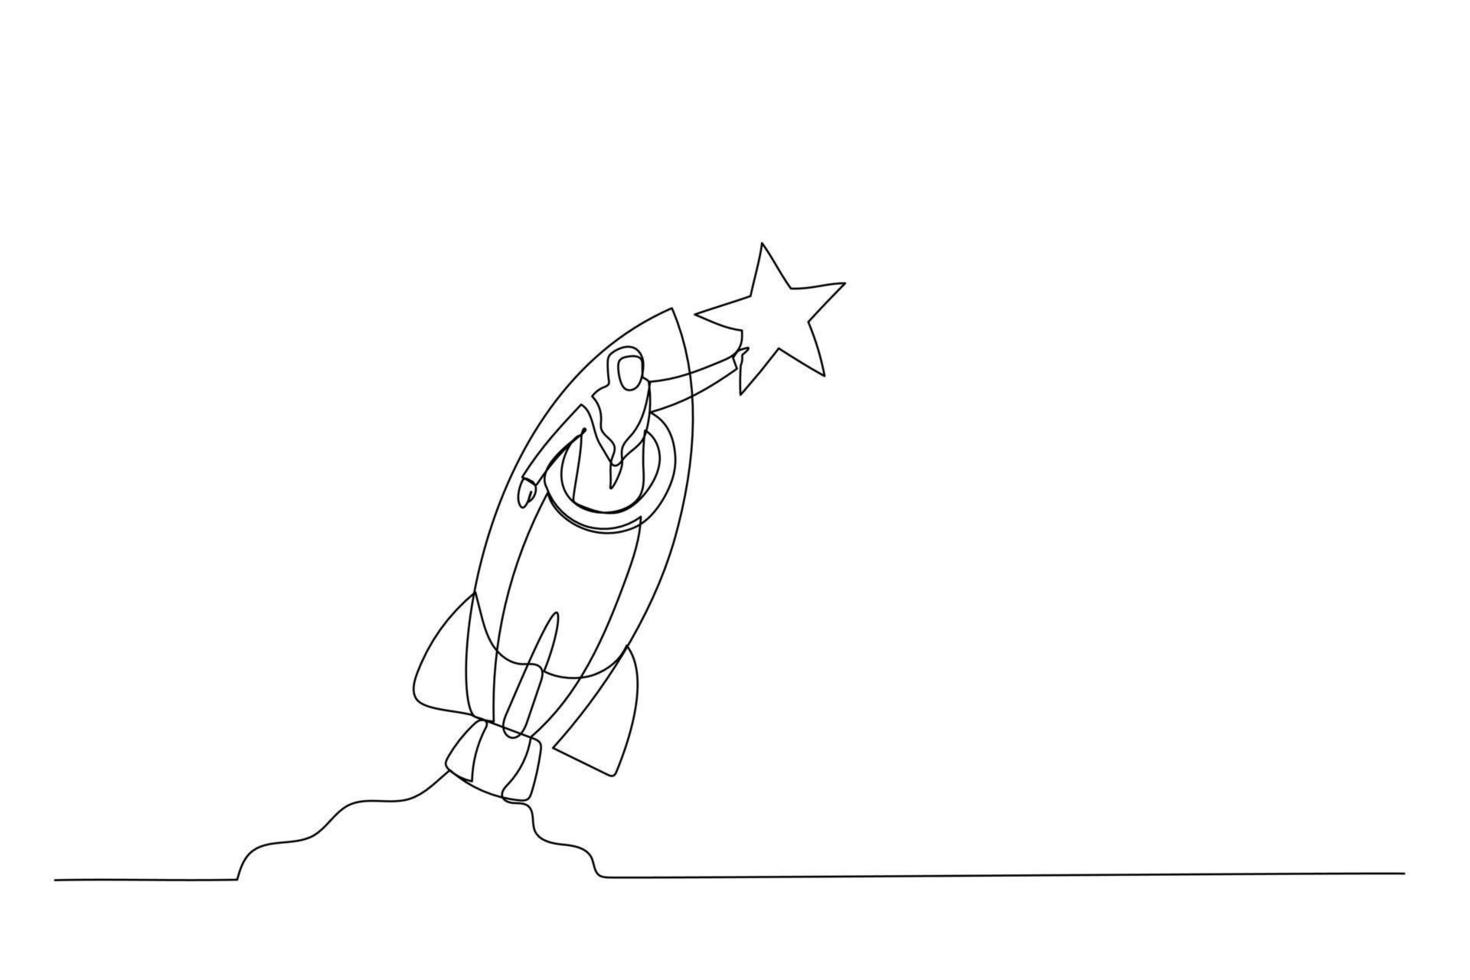 illustration einer muslimischen frau, die eine schnelle rakete fährt, um einen goldenen stern zu fangen. Metapher für Innovation. einzelne fortlaufende Strichzeichnungen vektor